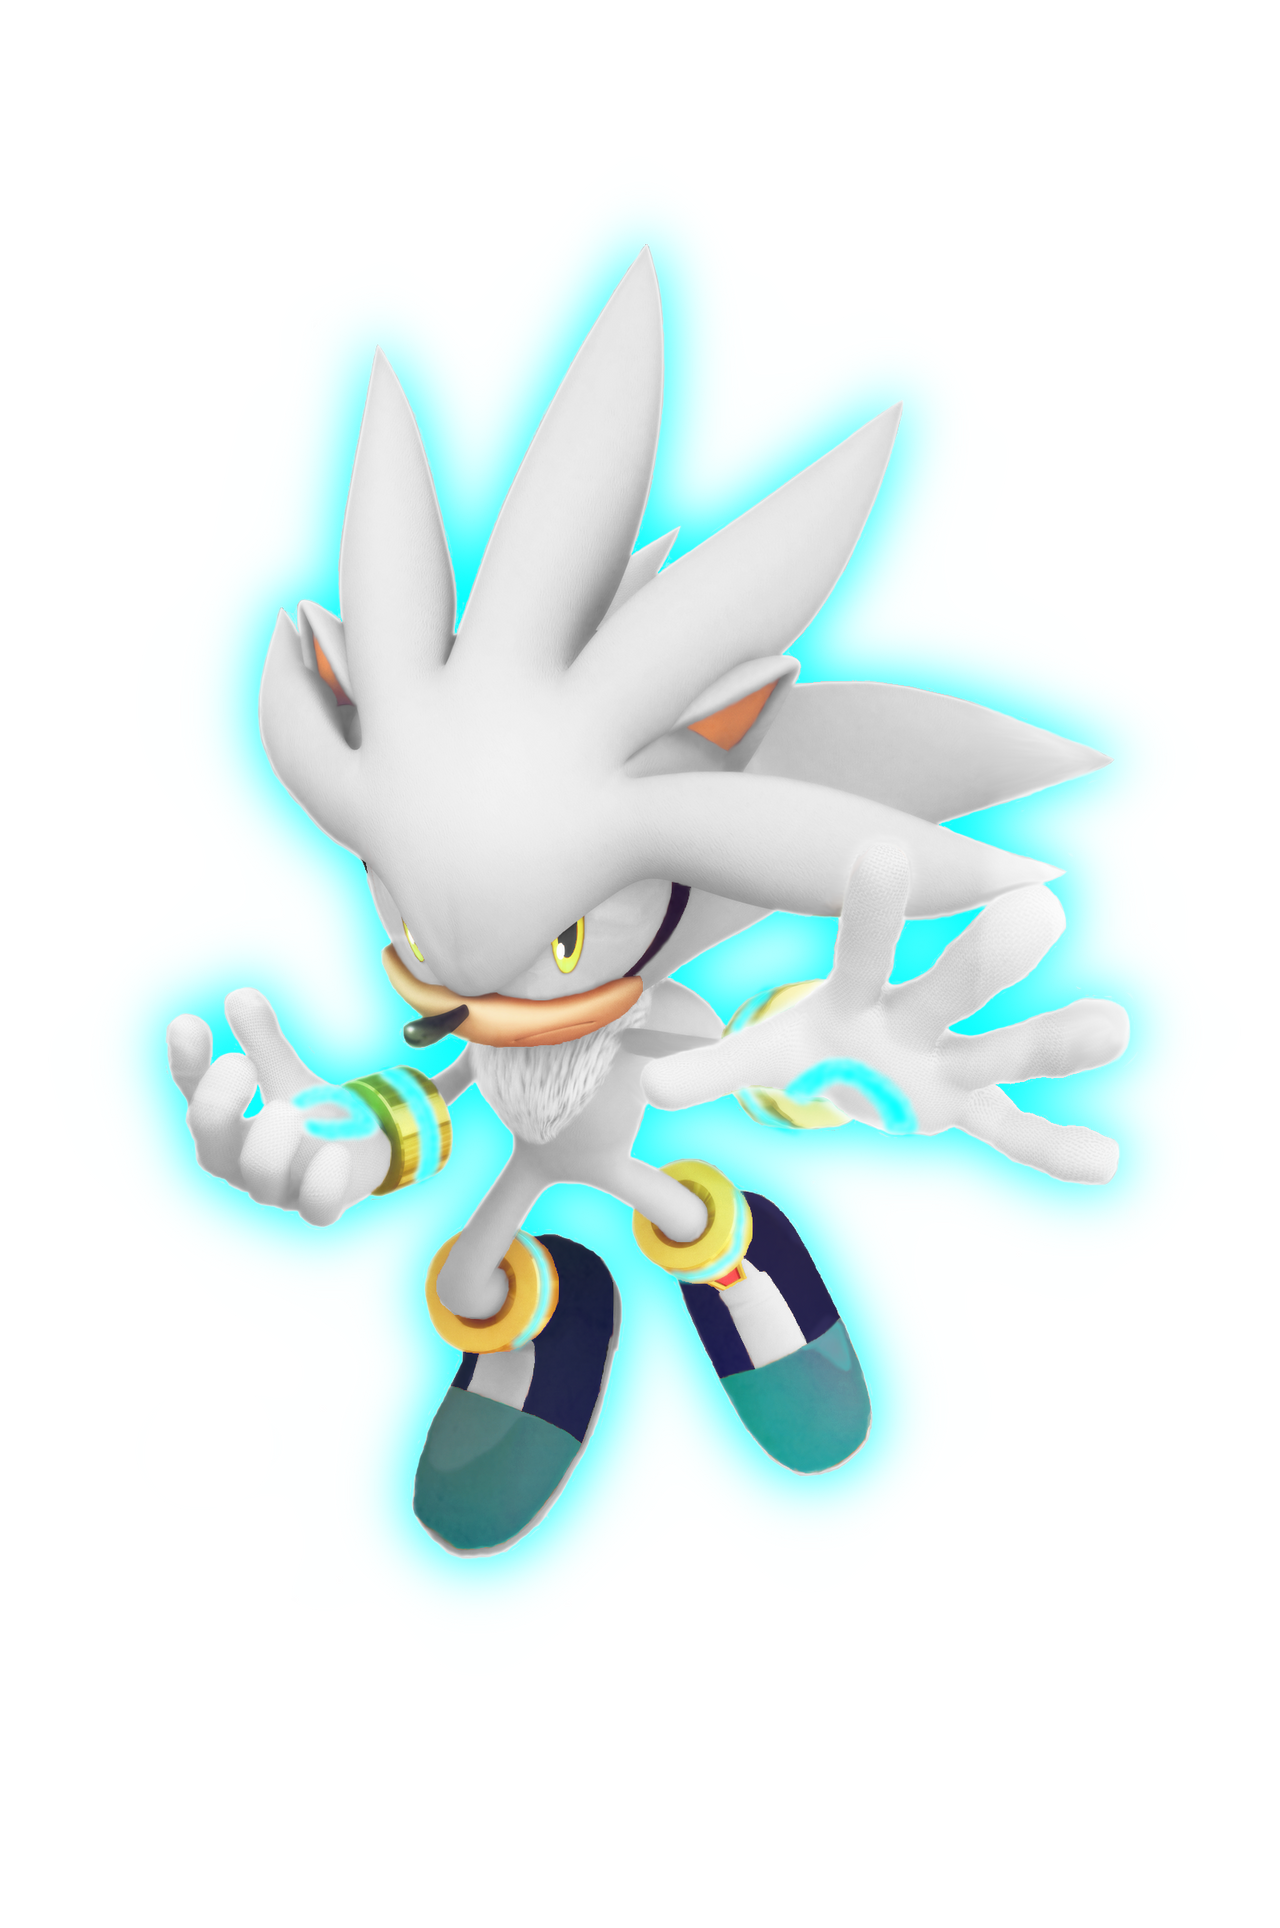 Shadow (Sonic Boom Style) by Silverdahedgehog06 on deviantART